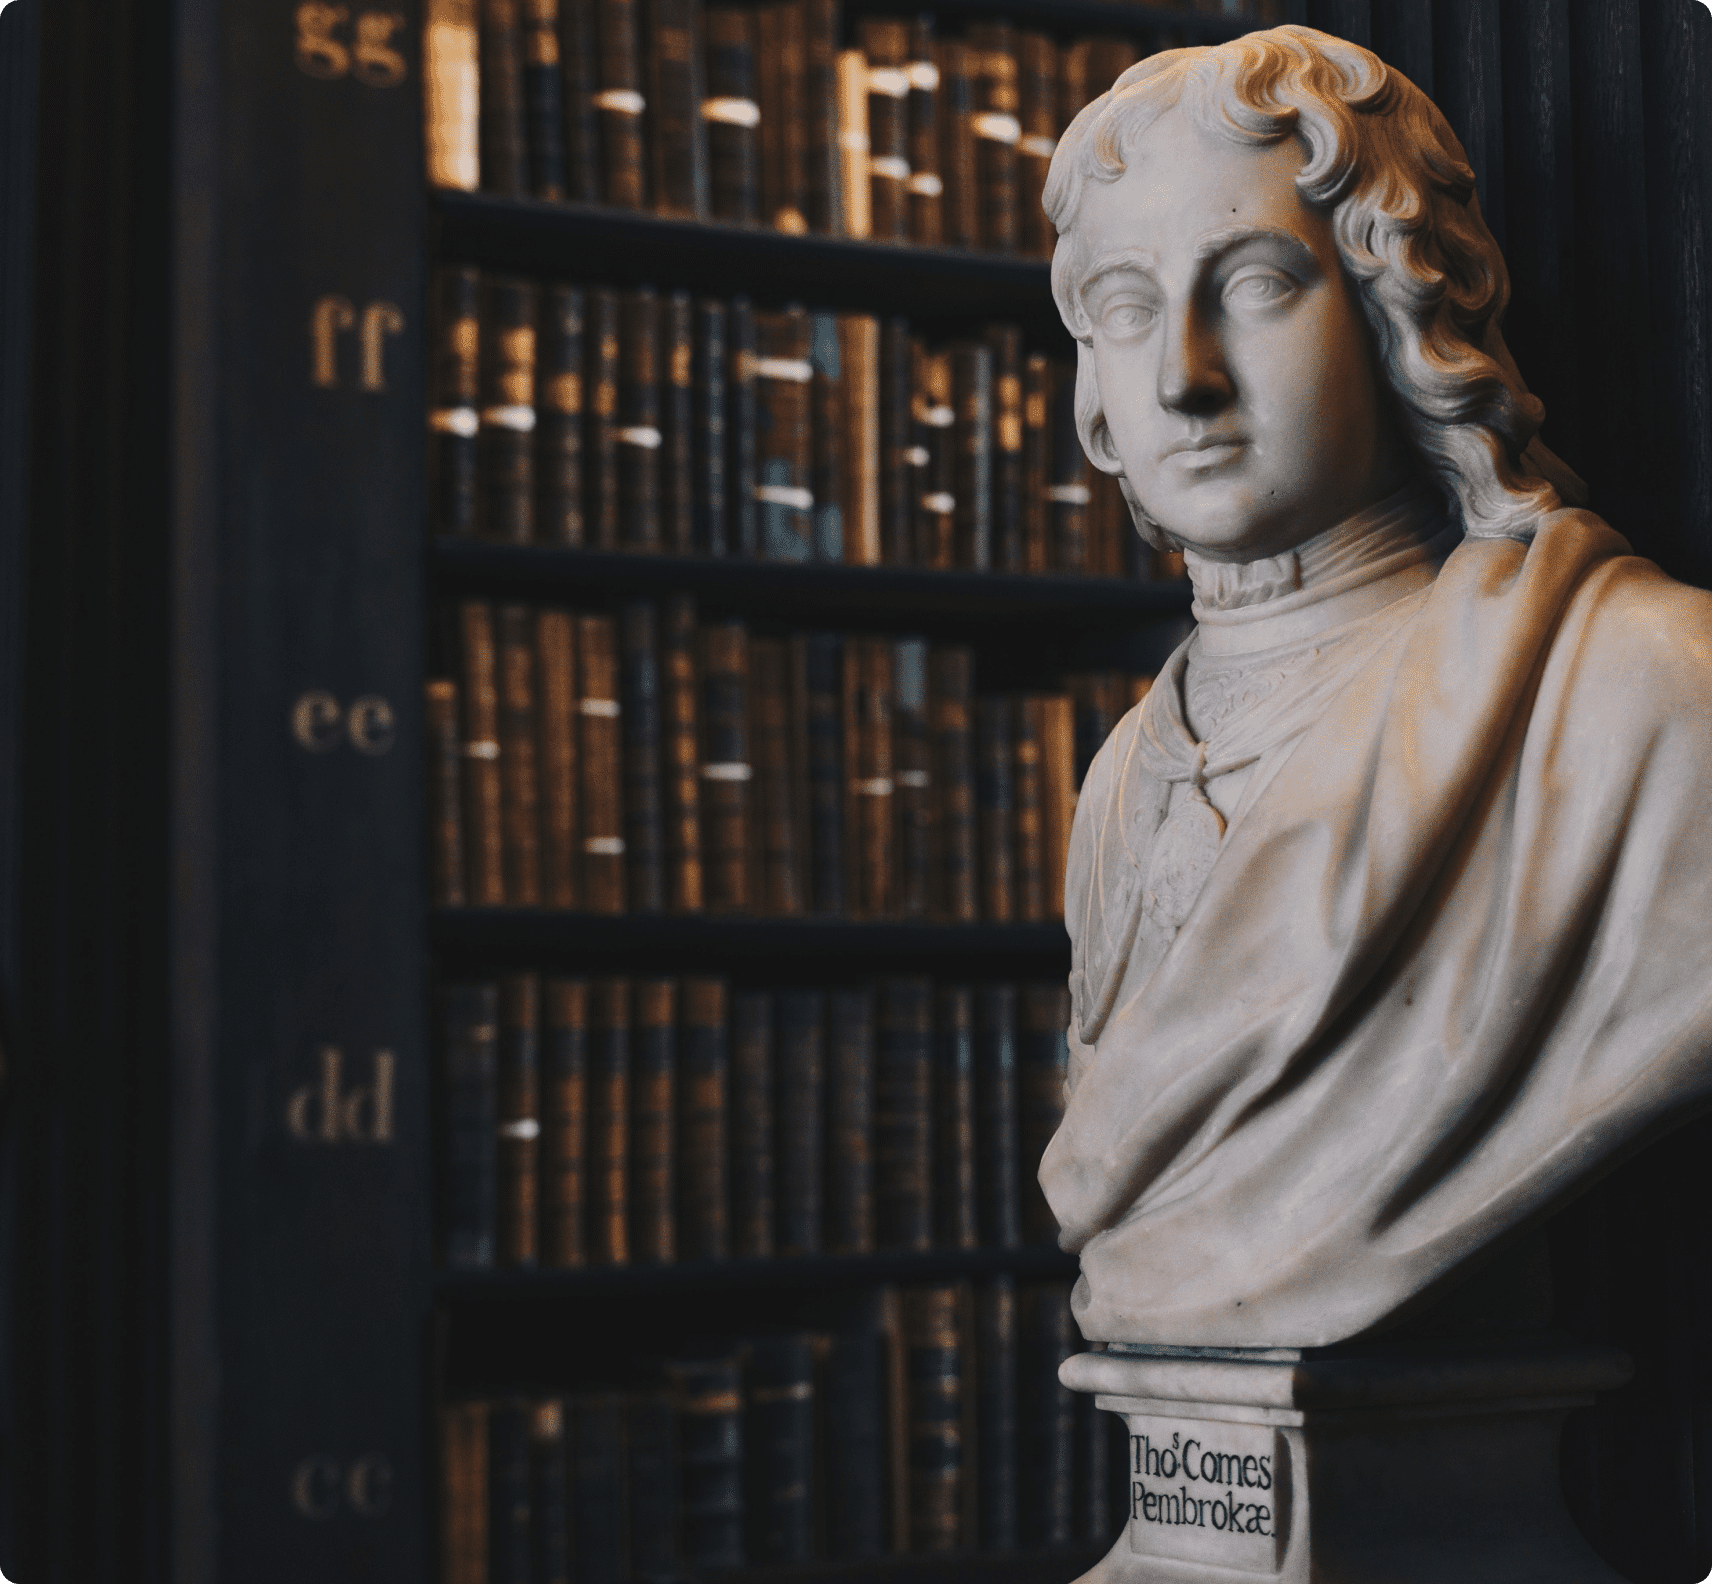 Una estatua de un abogado histórico en una biblioteca jurídica llena de libros en estanterías.